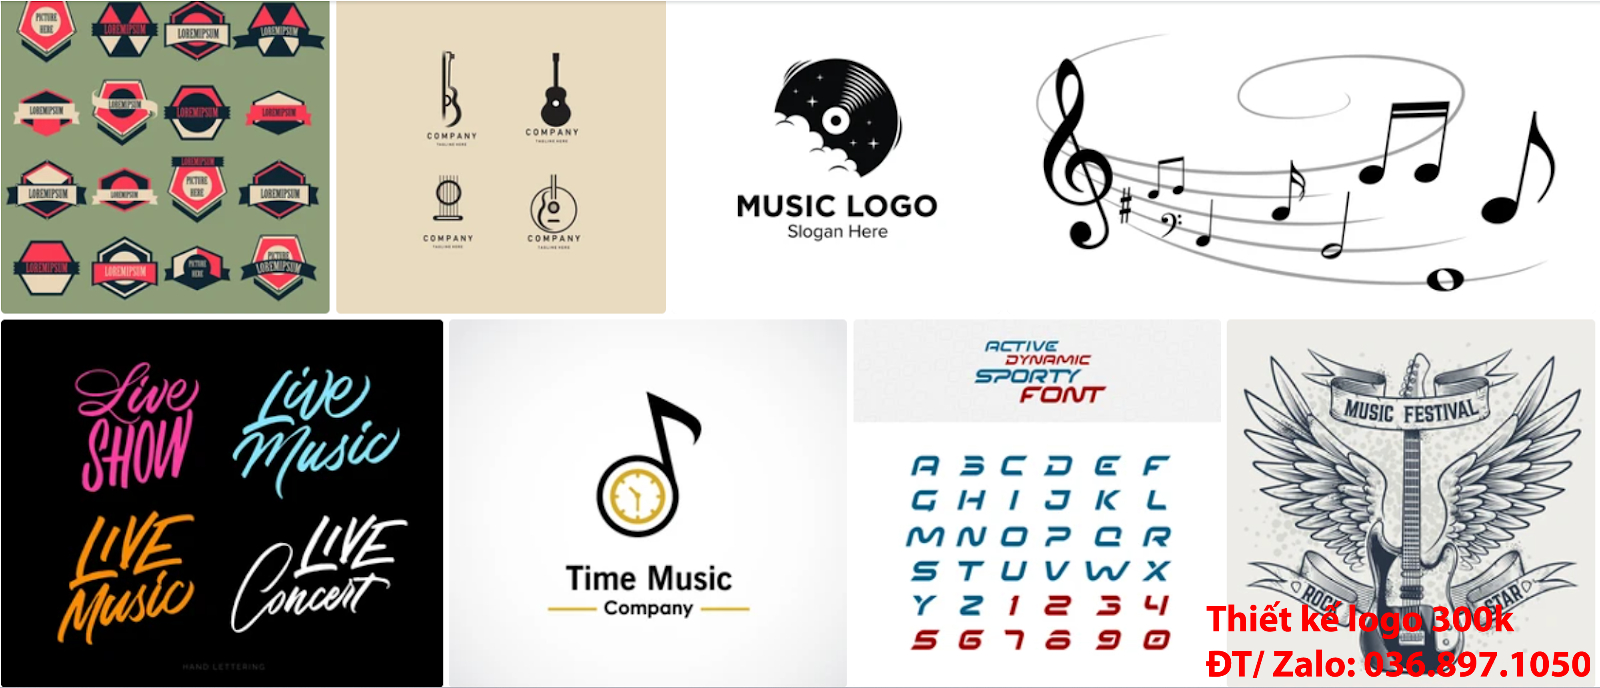 Đơn vị cung cấp dịch vụ làm Mẫu logo âm nhạc đơn giản tinh tế đẹp giá rẻ 300k - 500k uy tín chất lượng